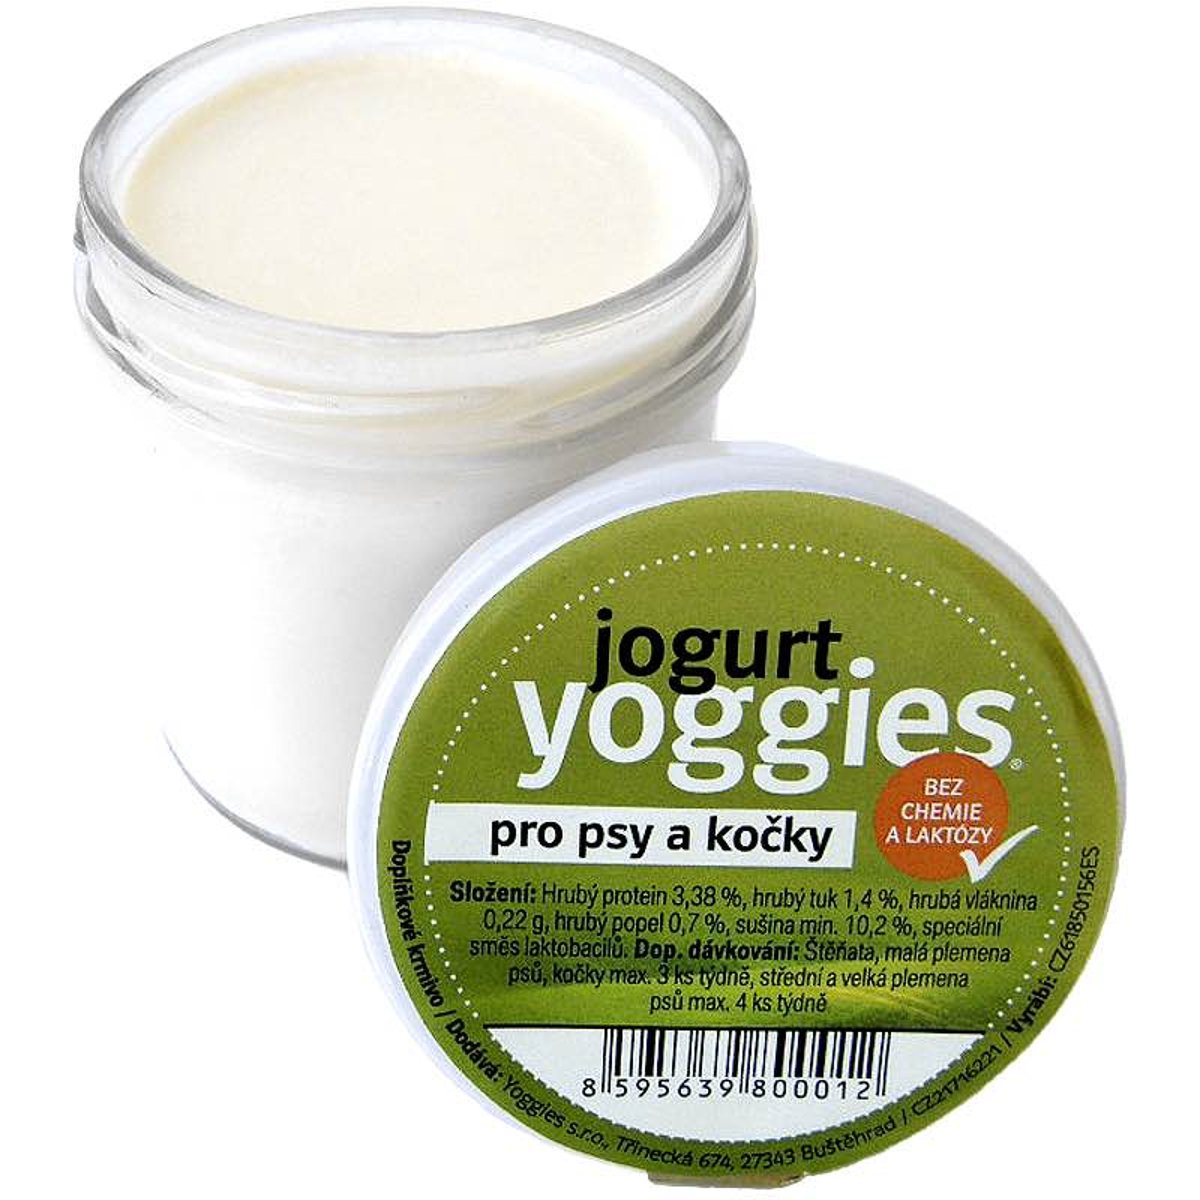 Yoggies Jogurt pro psy a kočky